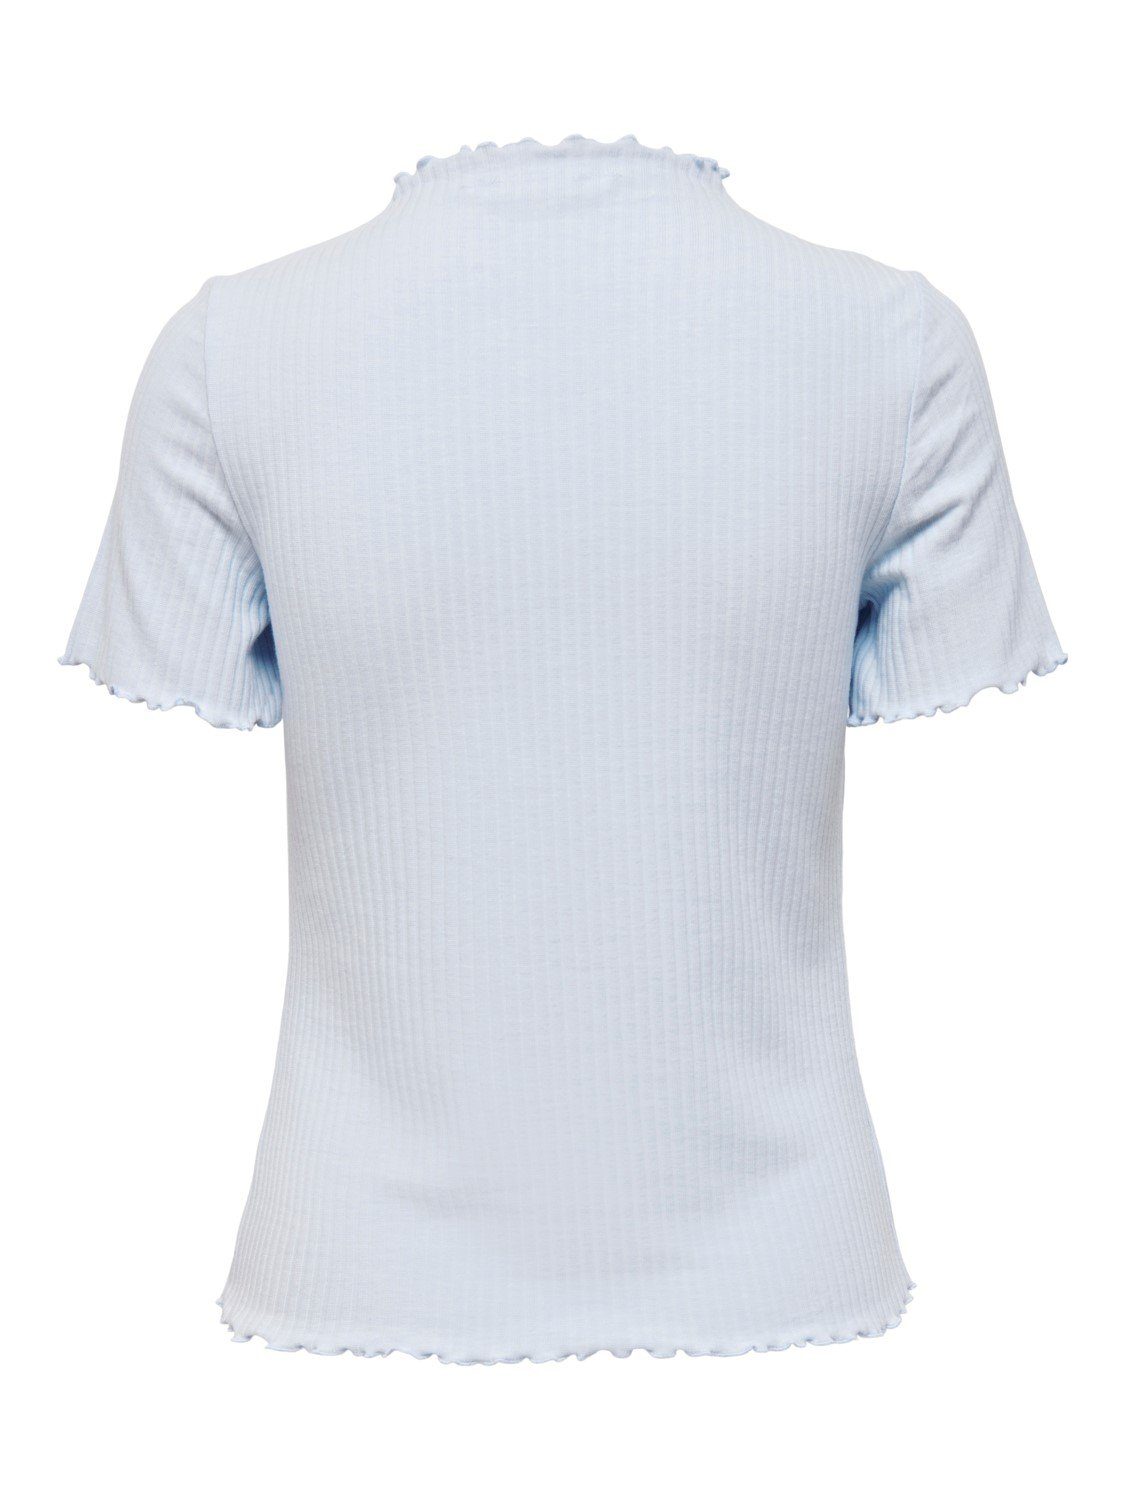 Gewellt Cropped 4018 ONLEMMA (1-tlg) in T-Shirt Hellblau Top Rundhals T-Shirt ONLY Stehkragen Geripptes